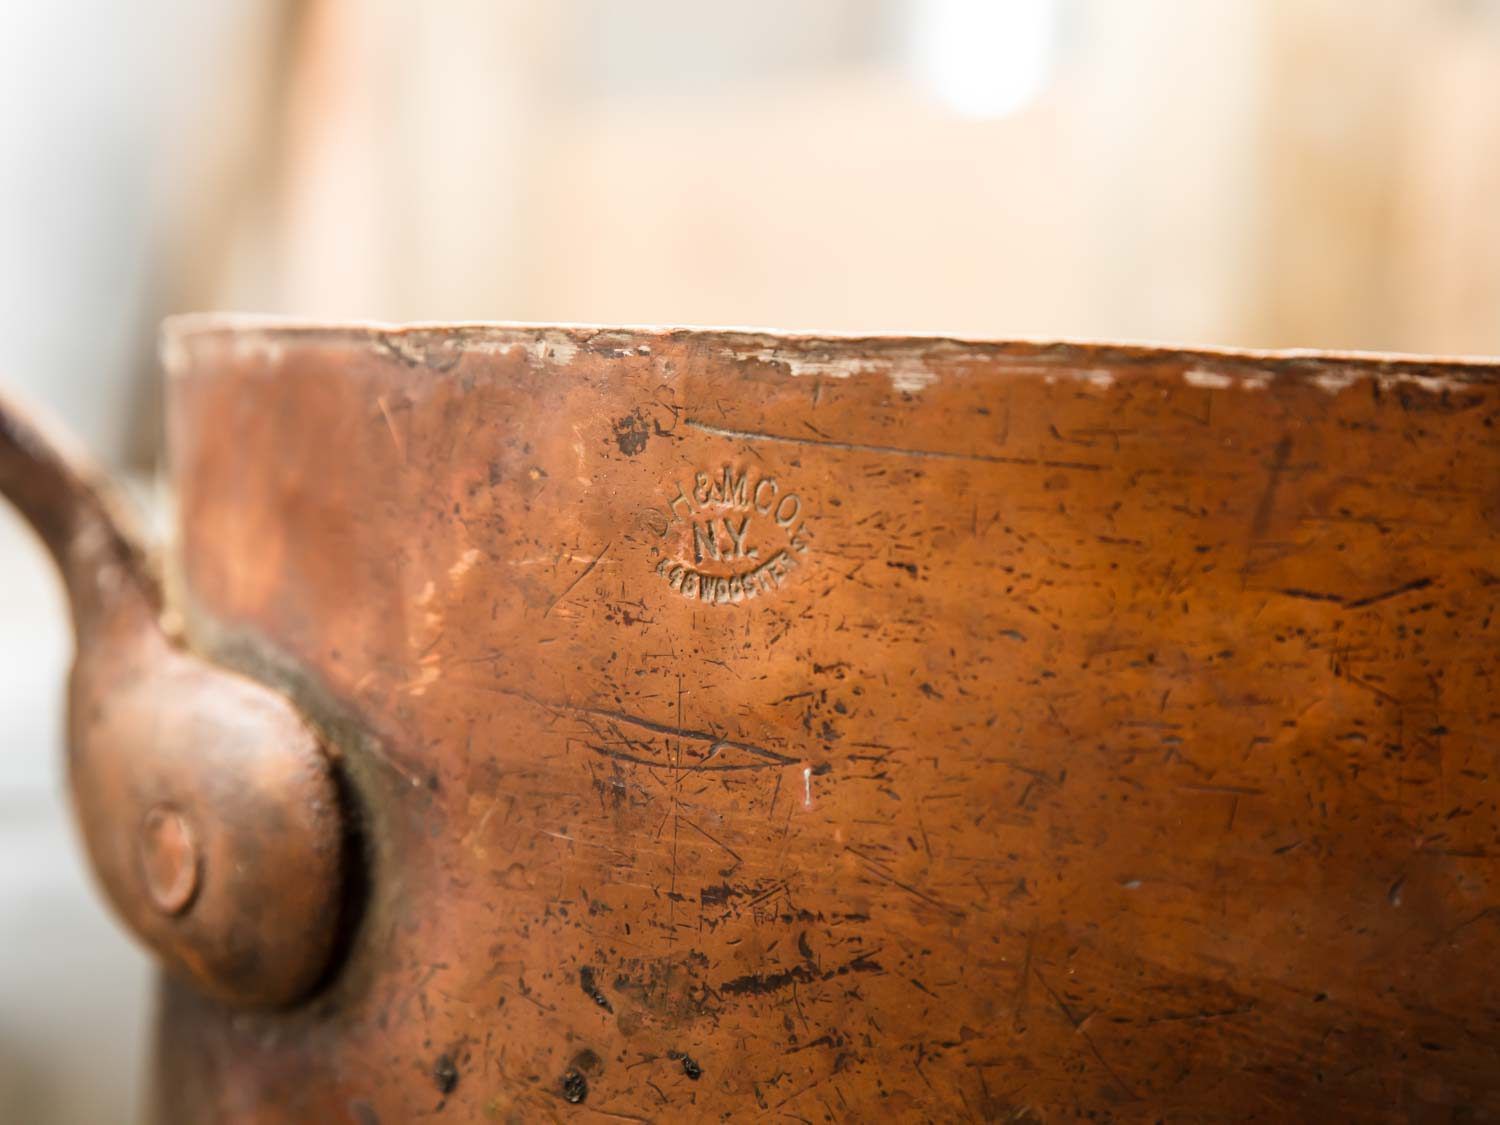 一件老式铜制炊具上印有该公司印章的特写